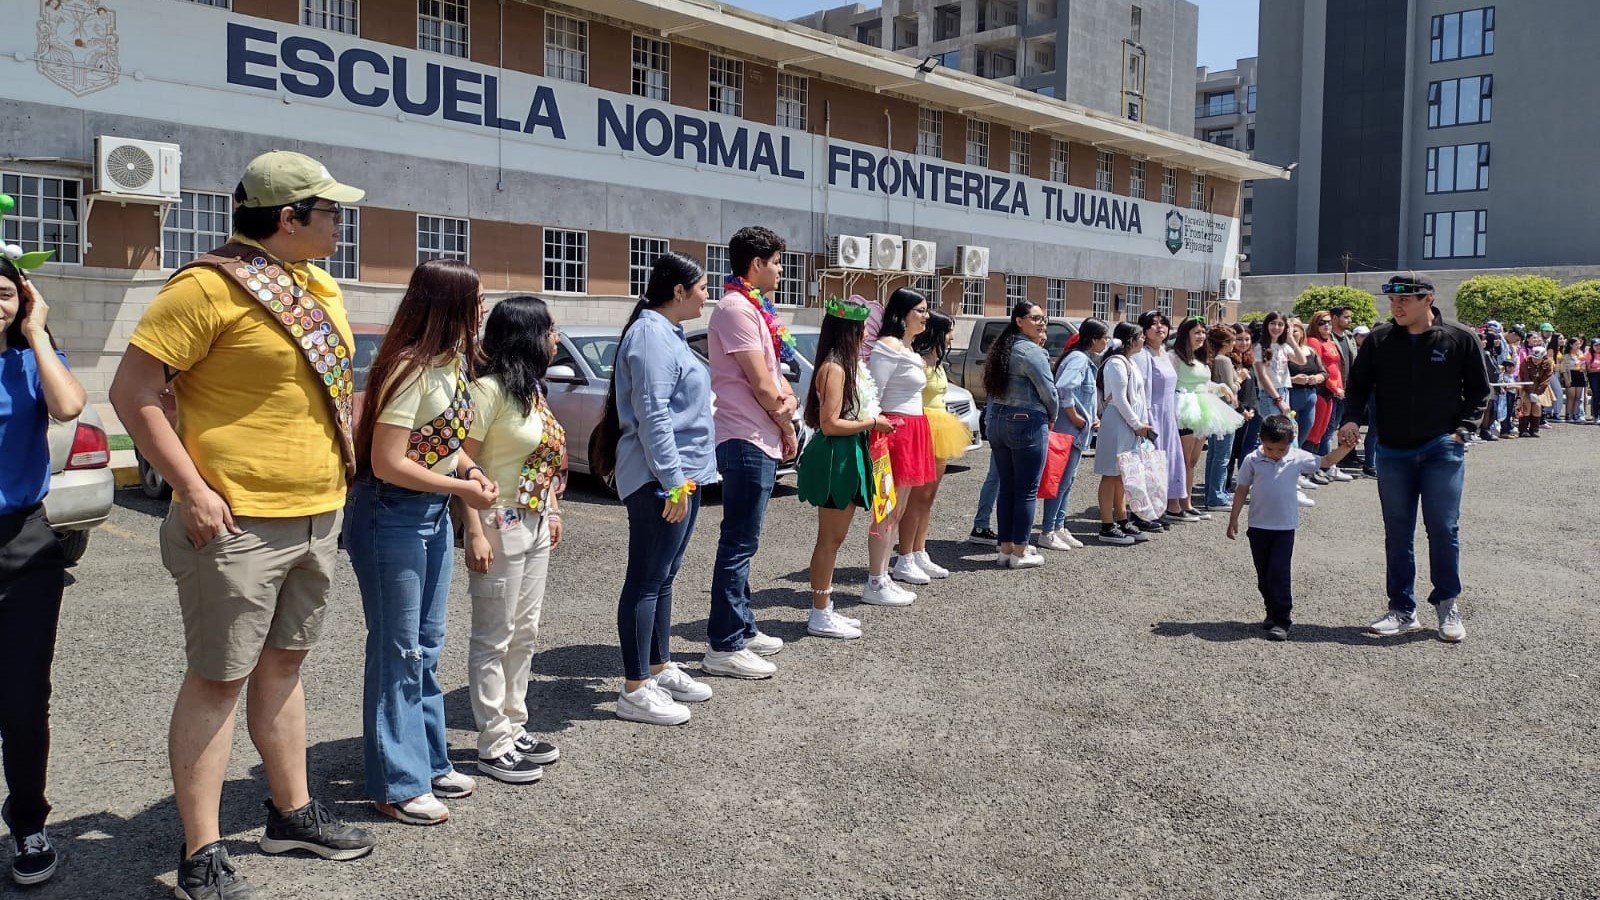 Escuela Normal Fronteriza Tijuana festeja Día del Niño